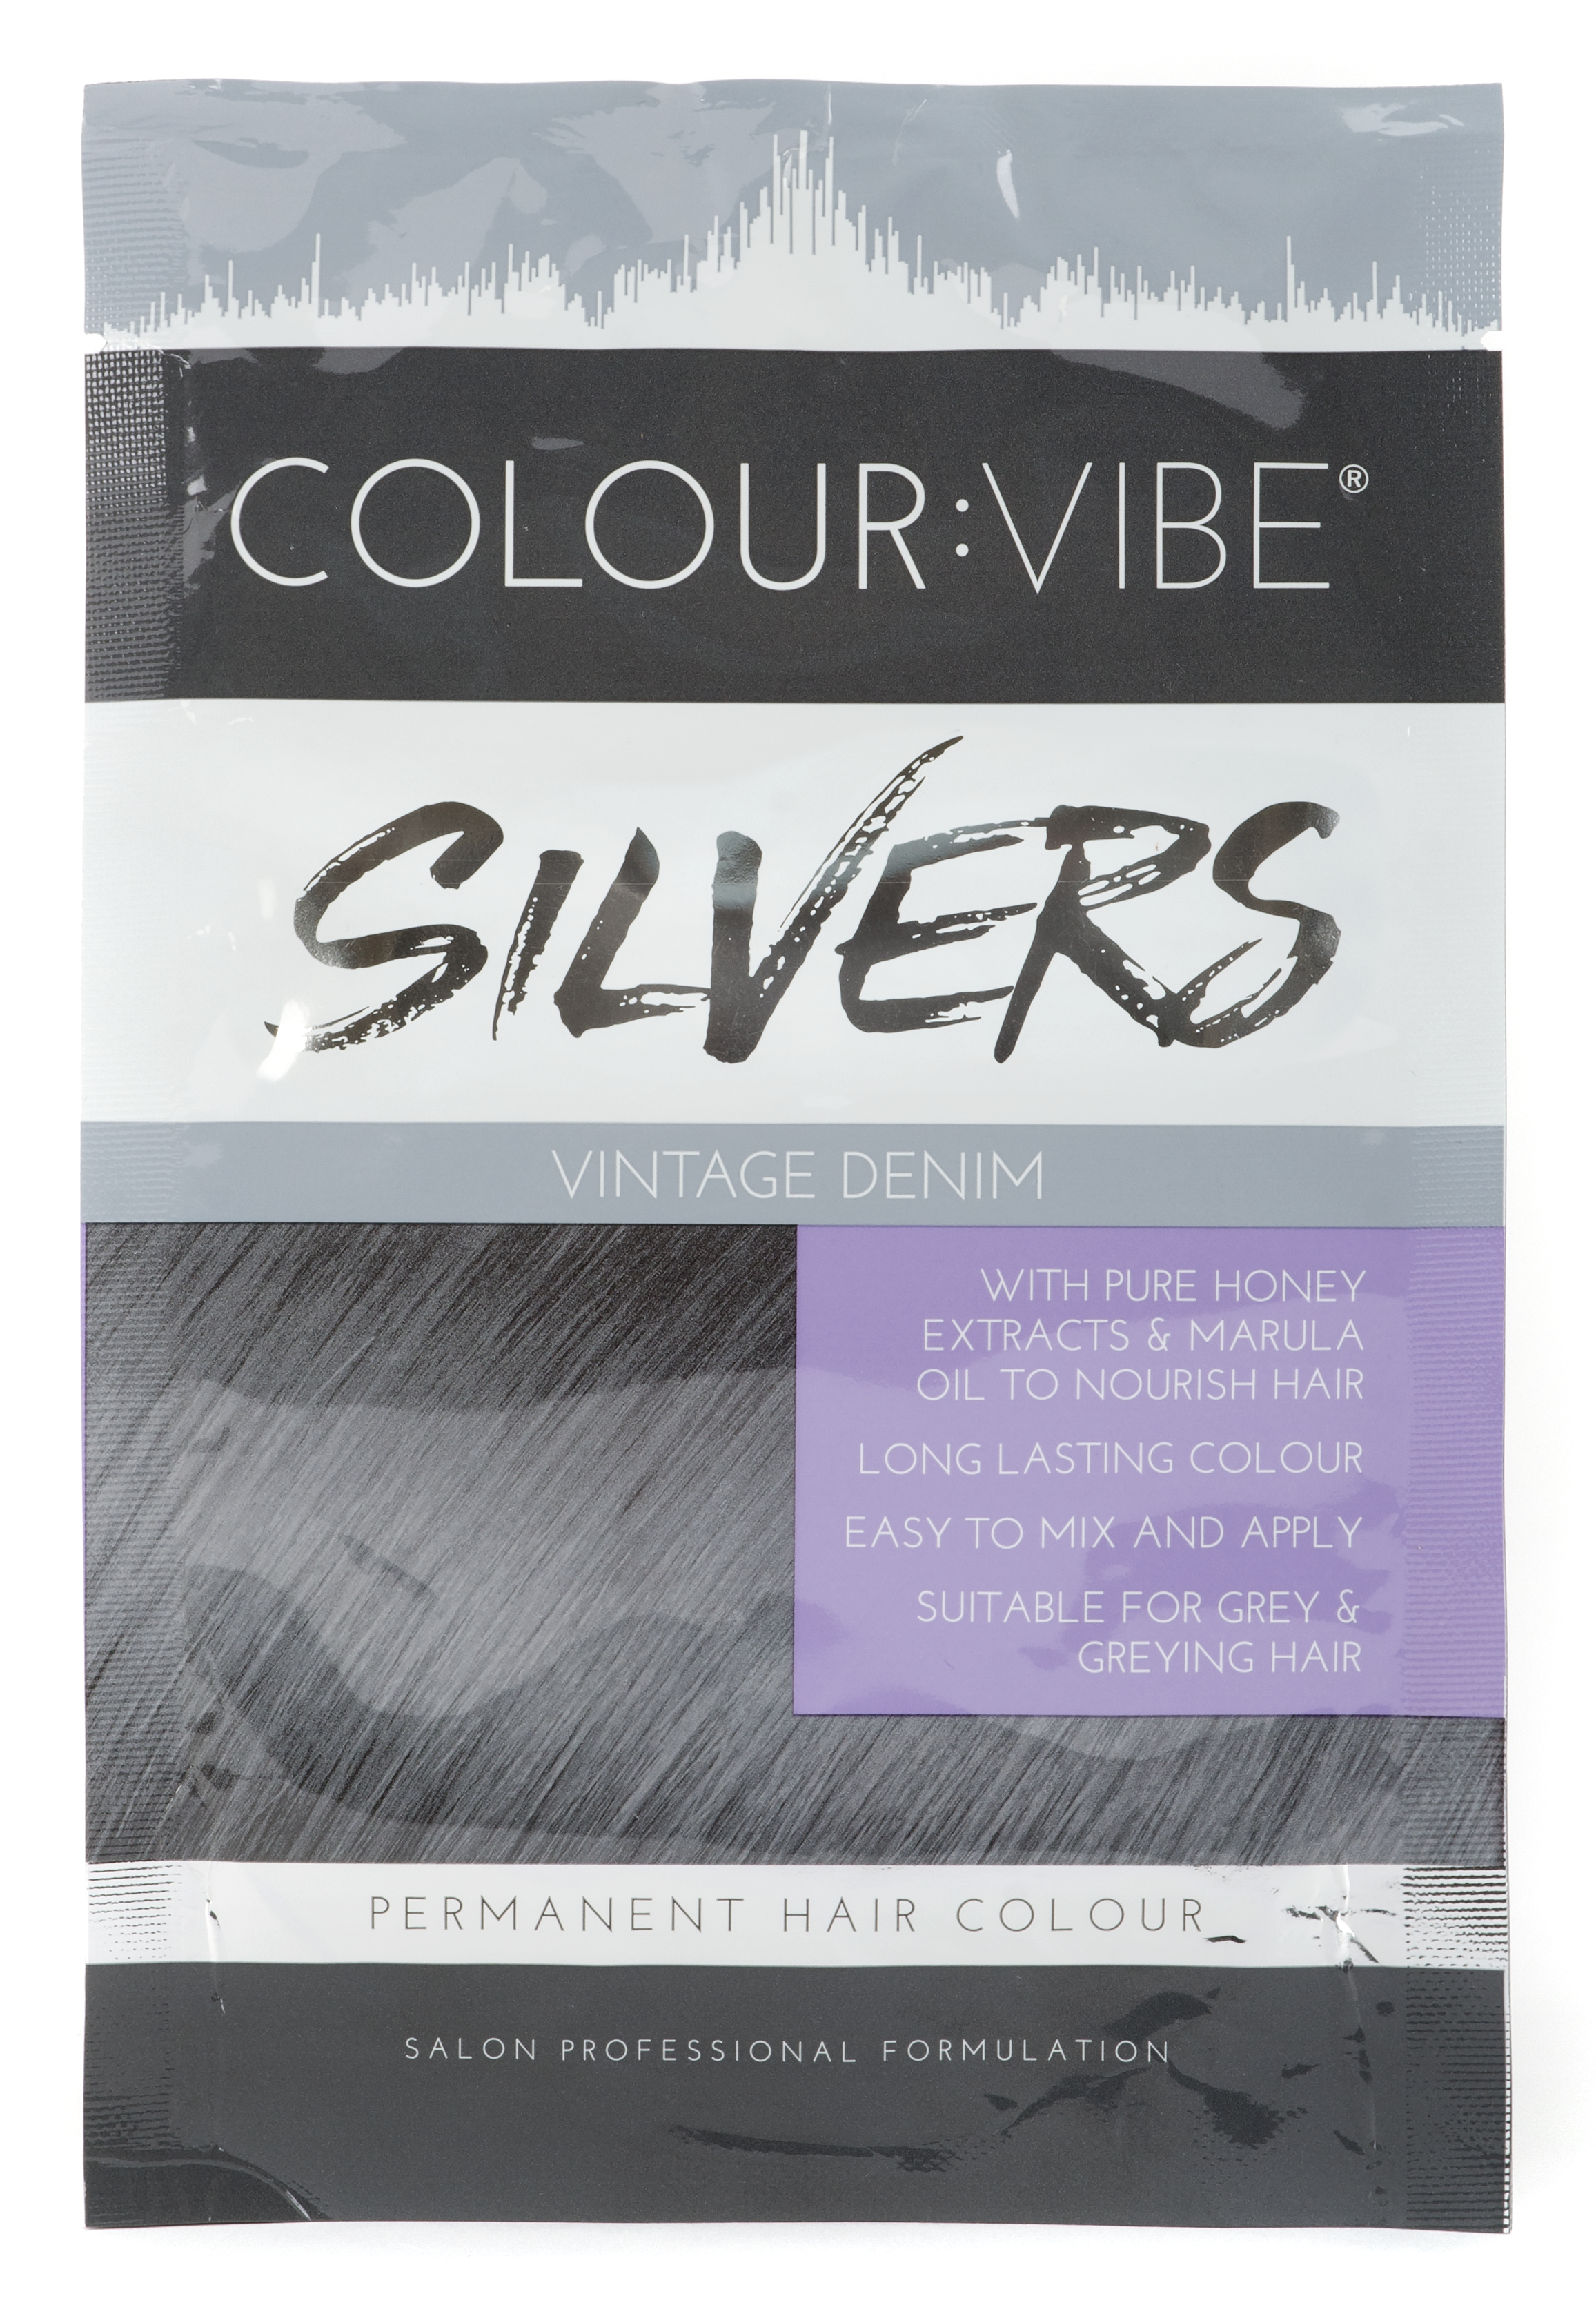 Colour:Vibe Silvers Permanent Vintage Denim